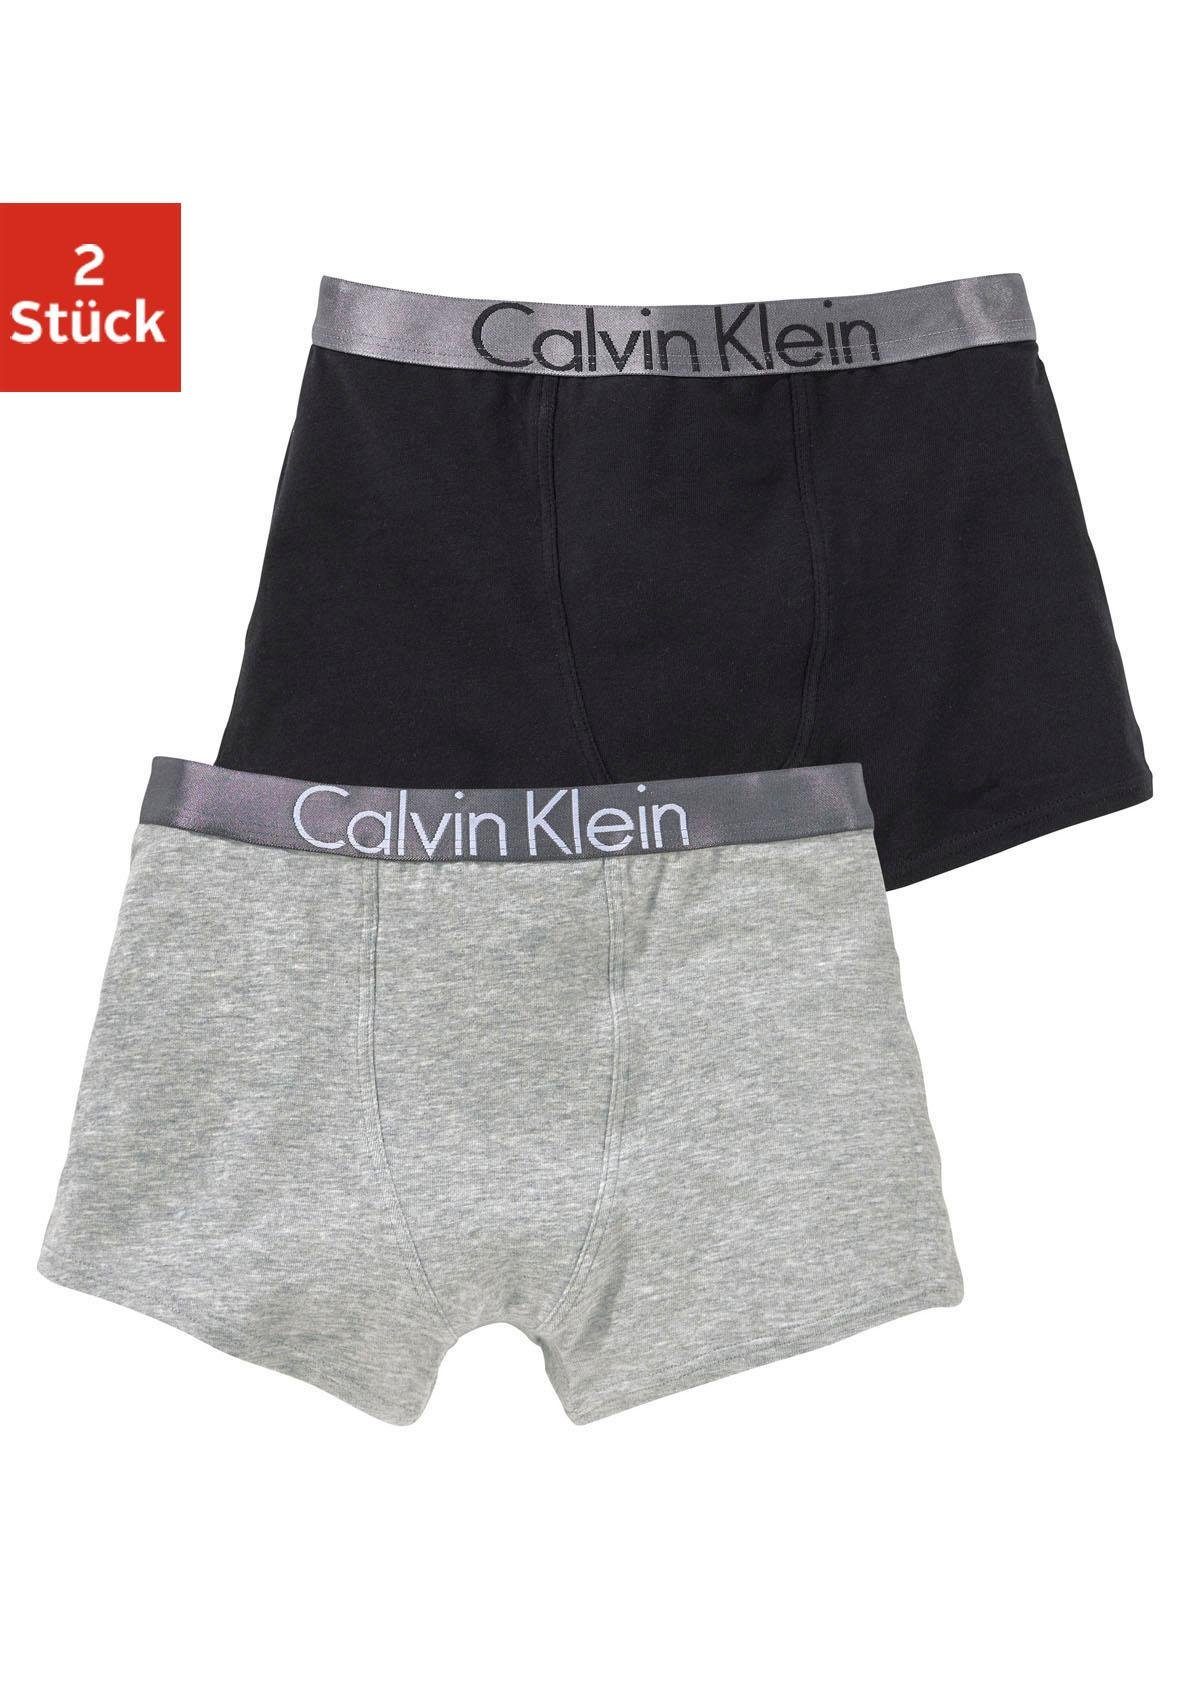 Calvin Klein Boxershorts Jungen online kaufen | OTTO